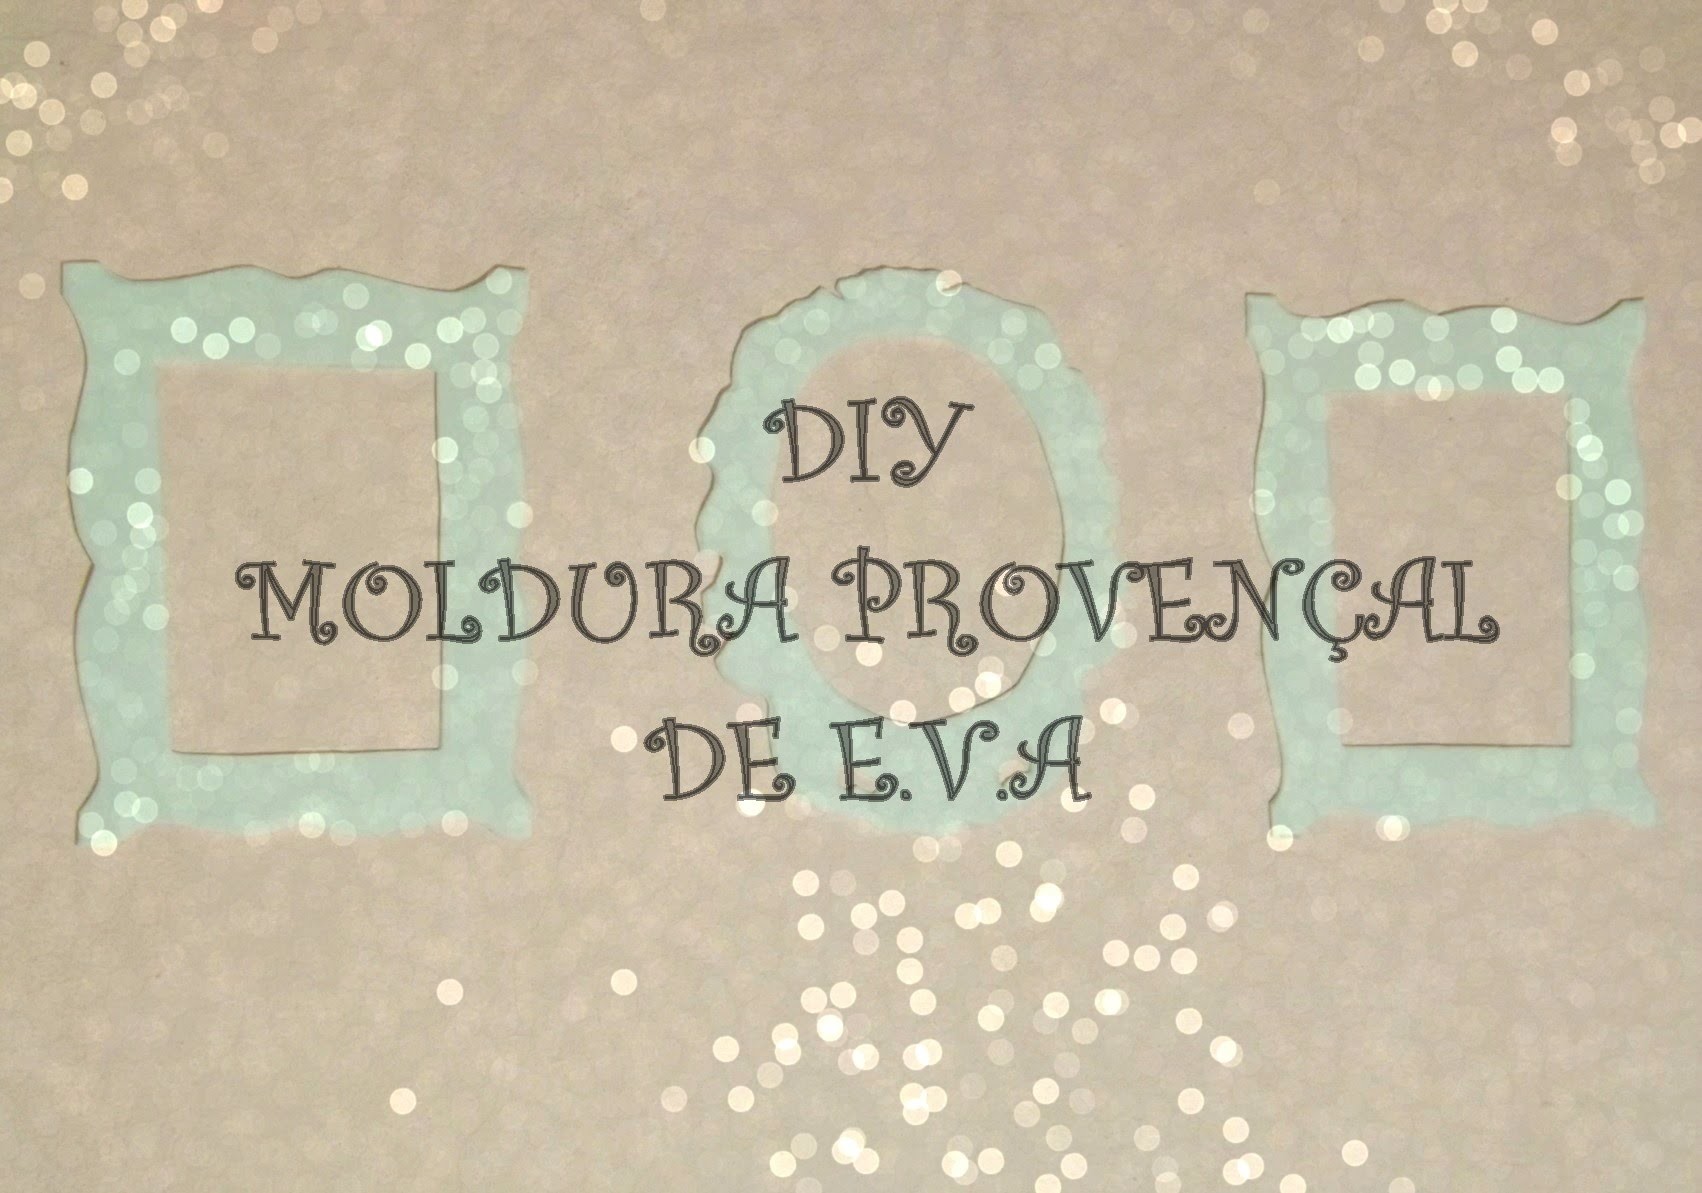 DIY - Moldura Provençal de E.V.A